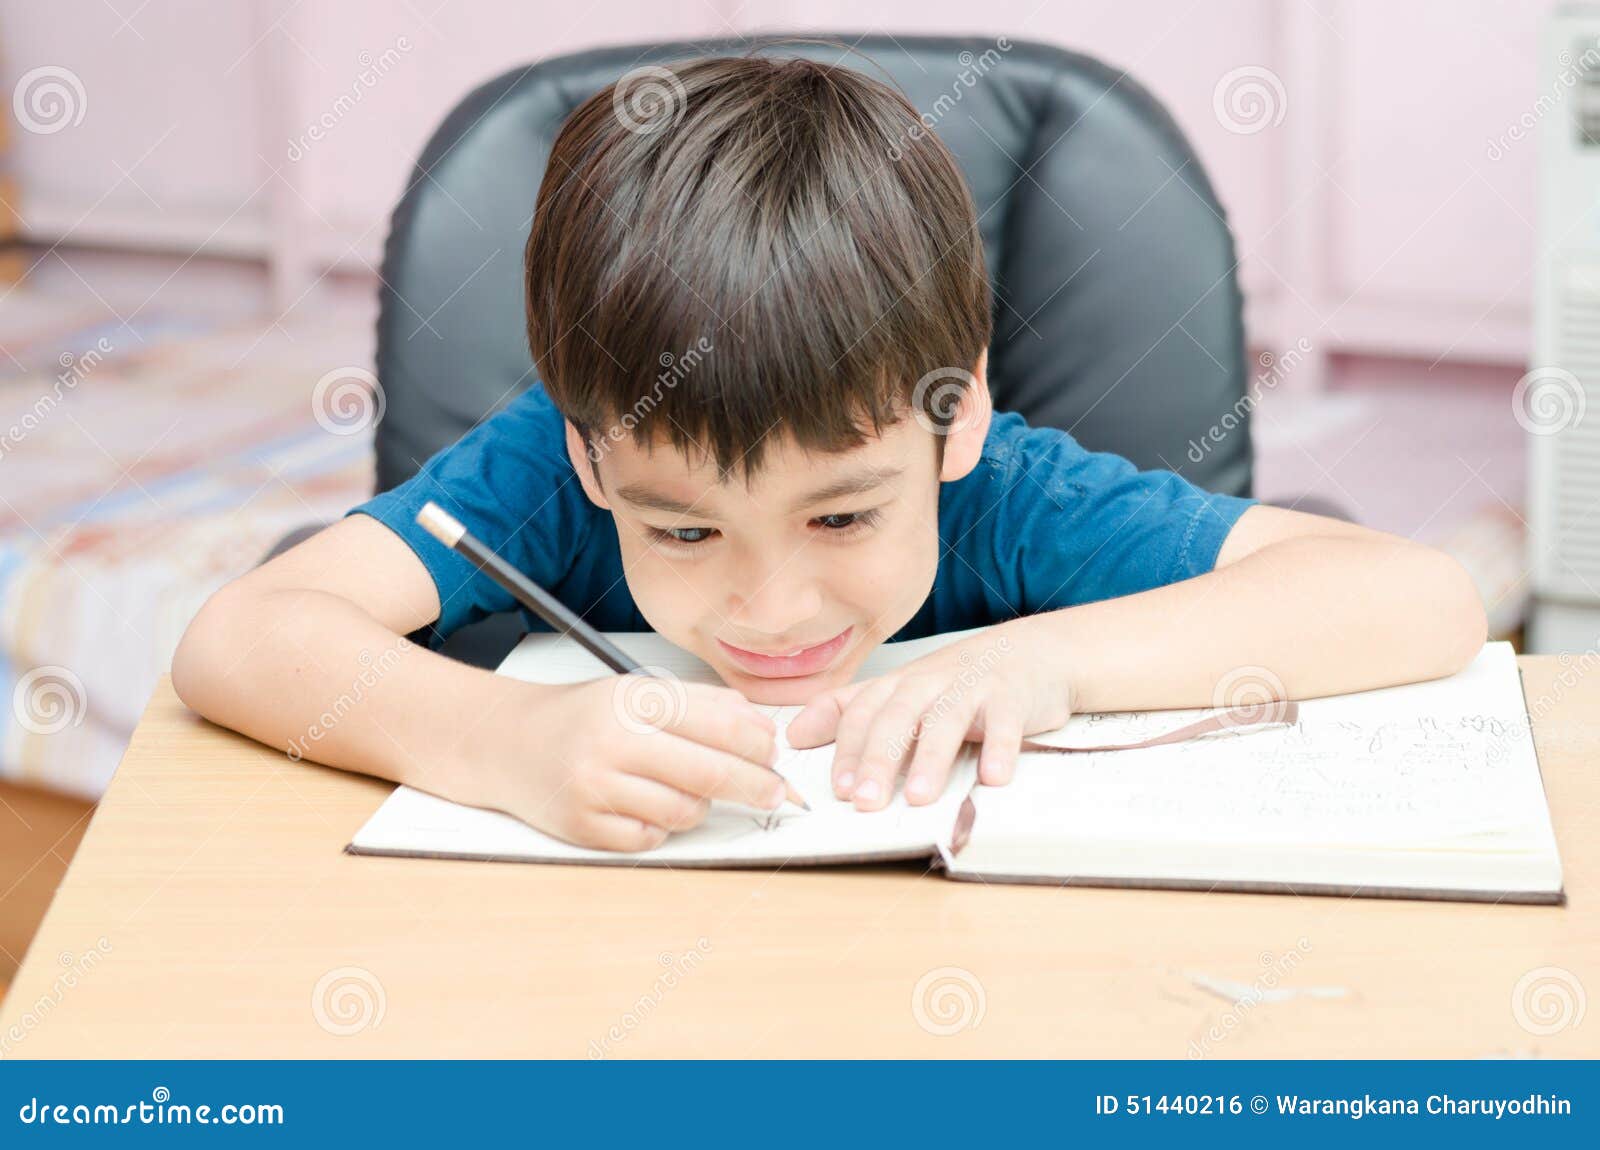 Мальчик который написал помогите. Мальчик пишет мир. Мальчик пишет криво. Злой ребенок пишет. Мальчик пишет письмо.